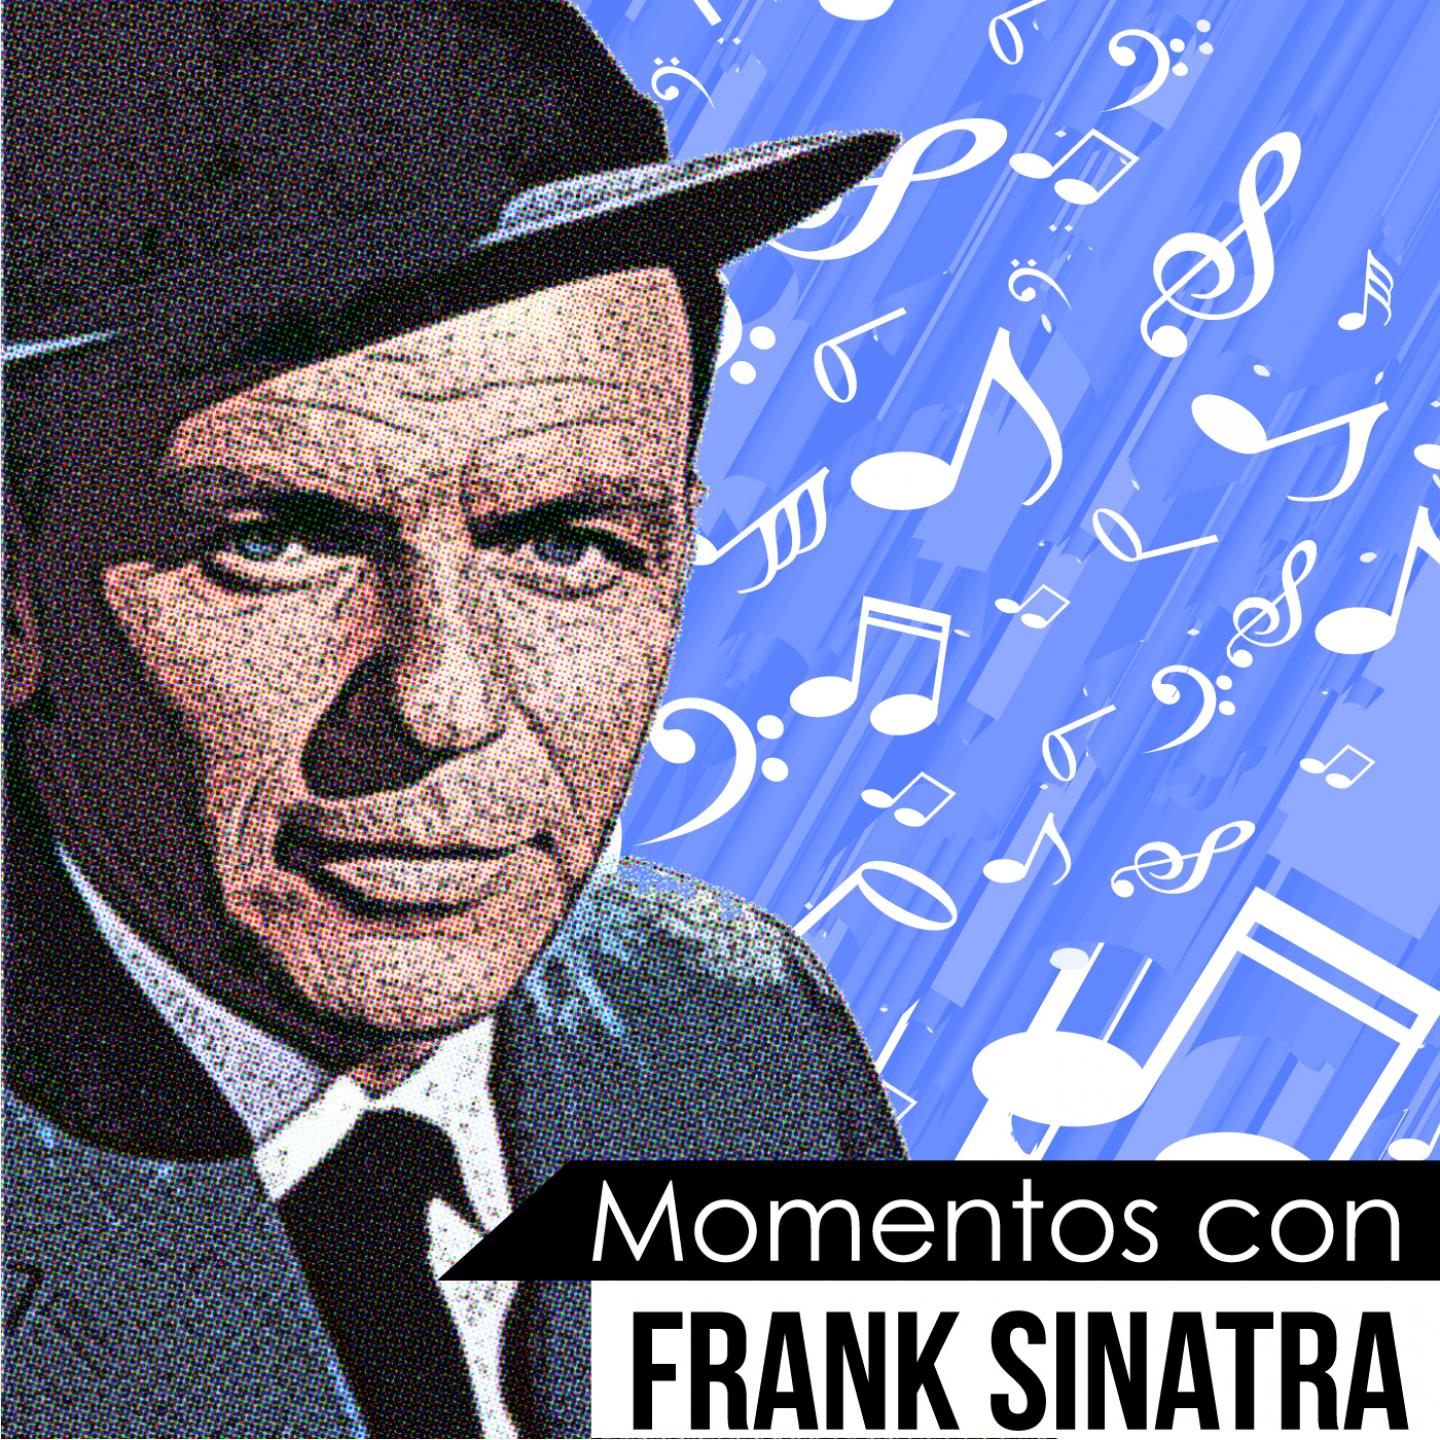 One Upon a Time (Momentos Con Frank Sinatra)